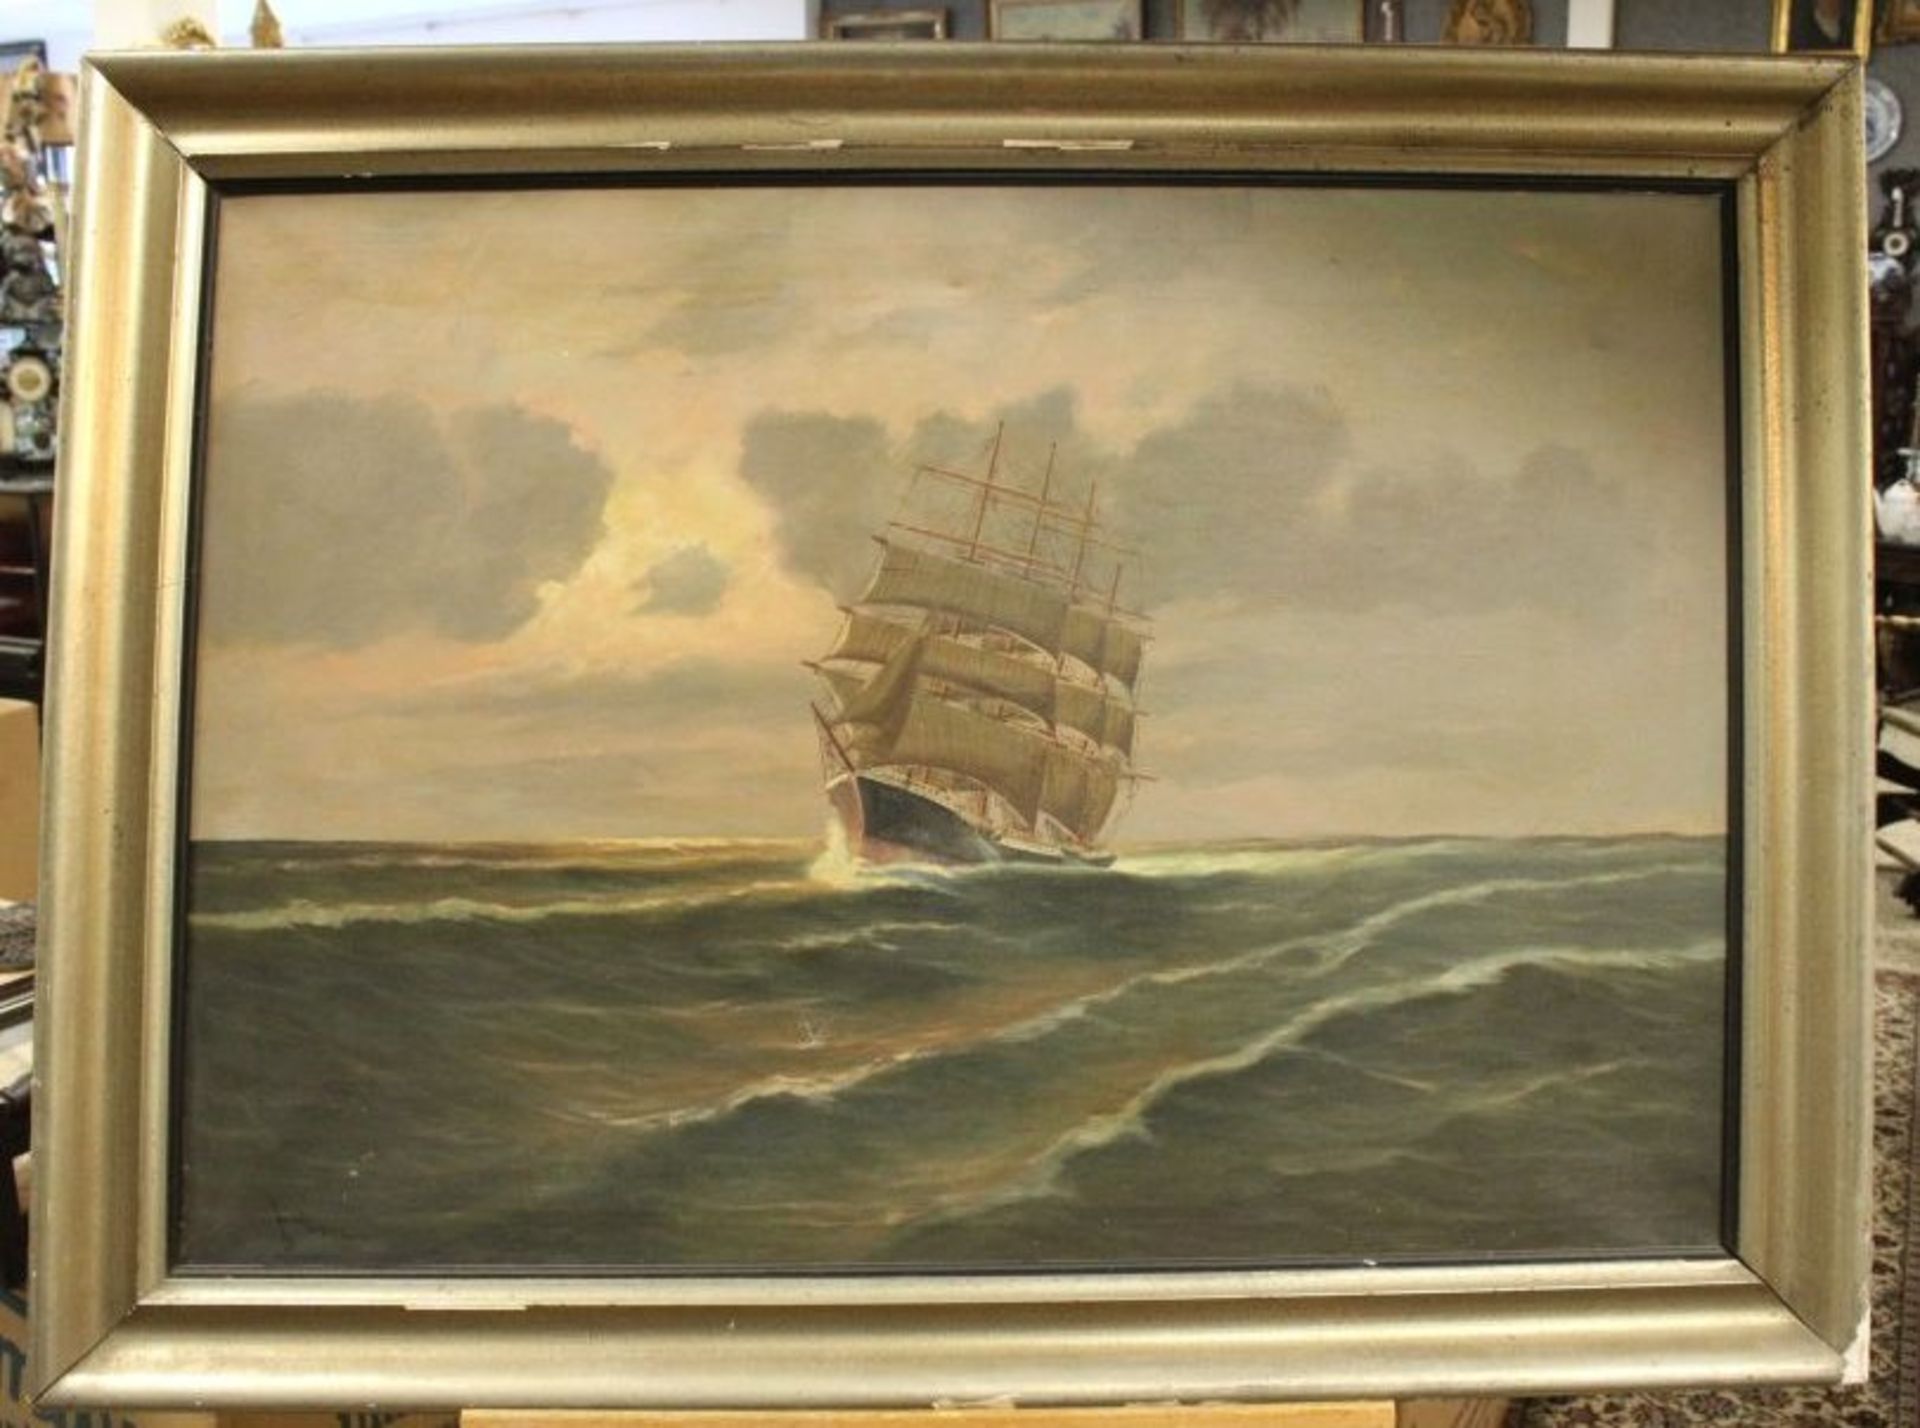 unleserl.signiert "Viermaster auf See", Öl/Leinwand, gerahmt, Rahmen beschädigt, RG 81 x 114cm - Bild 4 aus 5